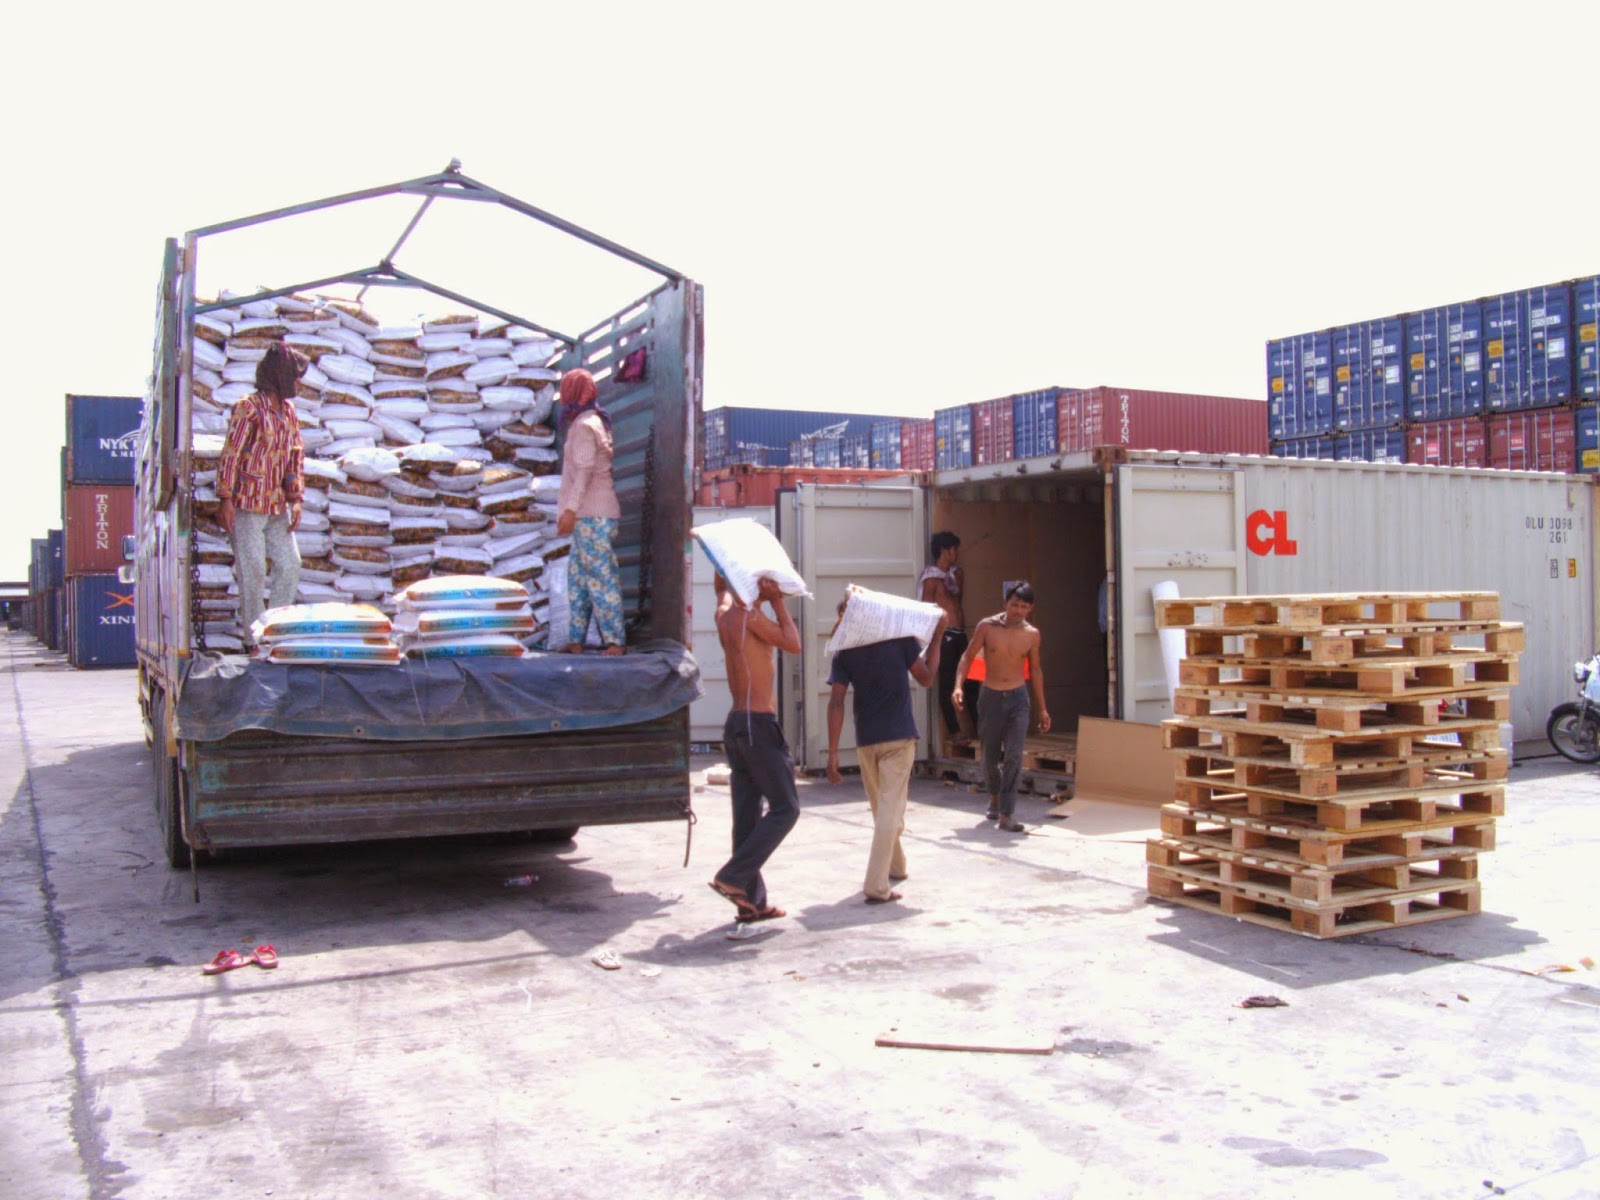 Bestcargo tổ chức vận chuyển hàng hóa đi các tỉnh thành của Lào, Campuchia